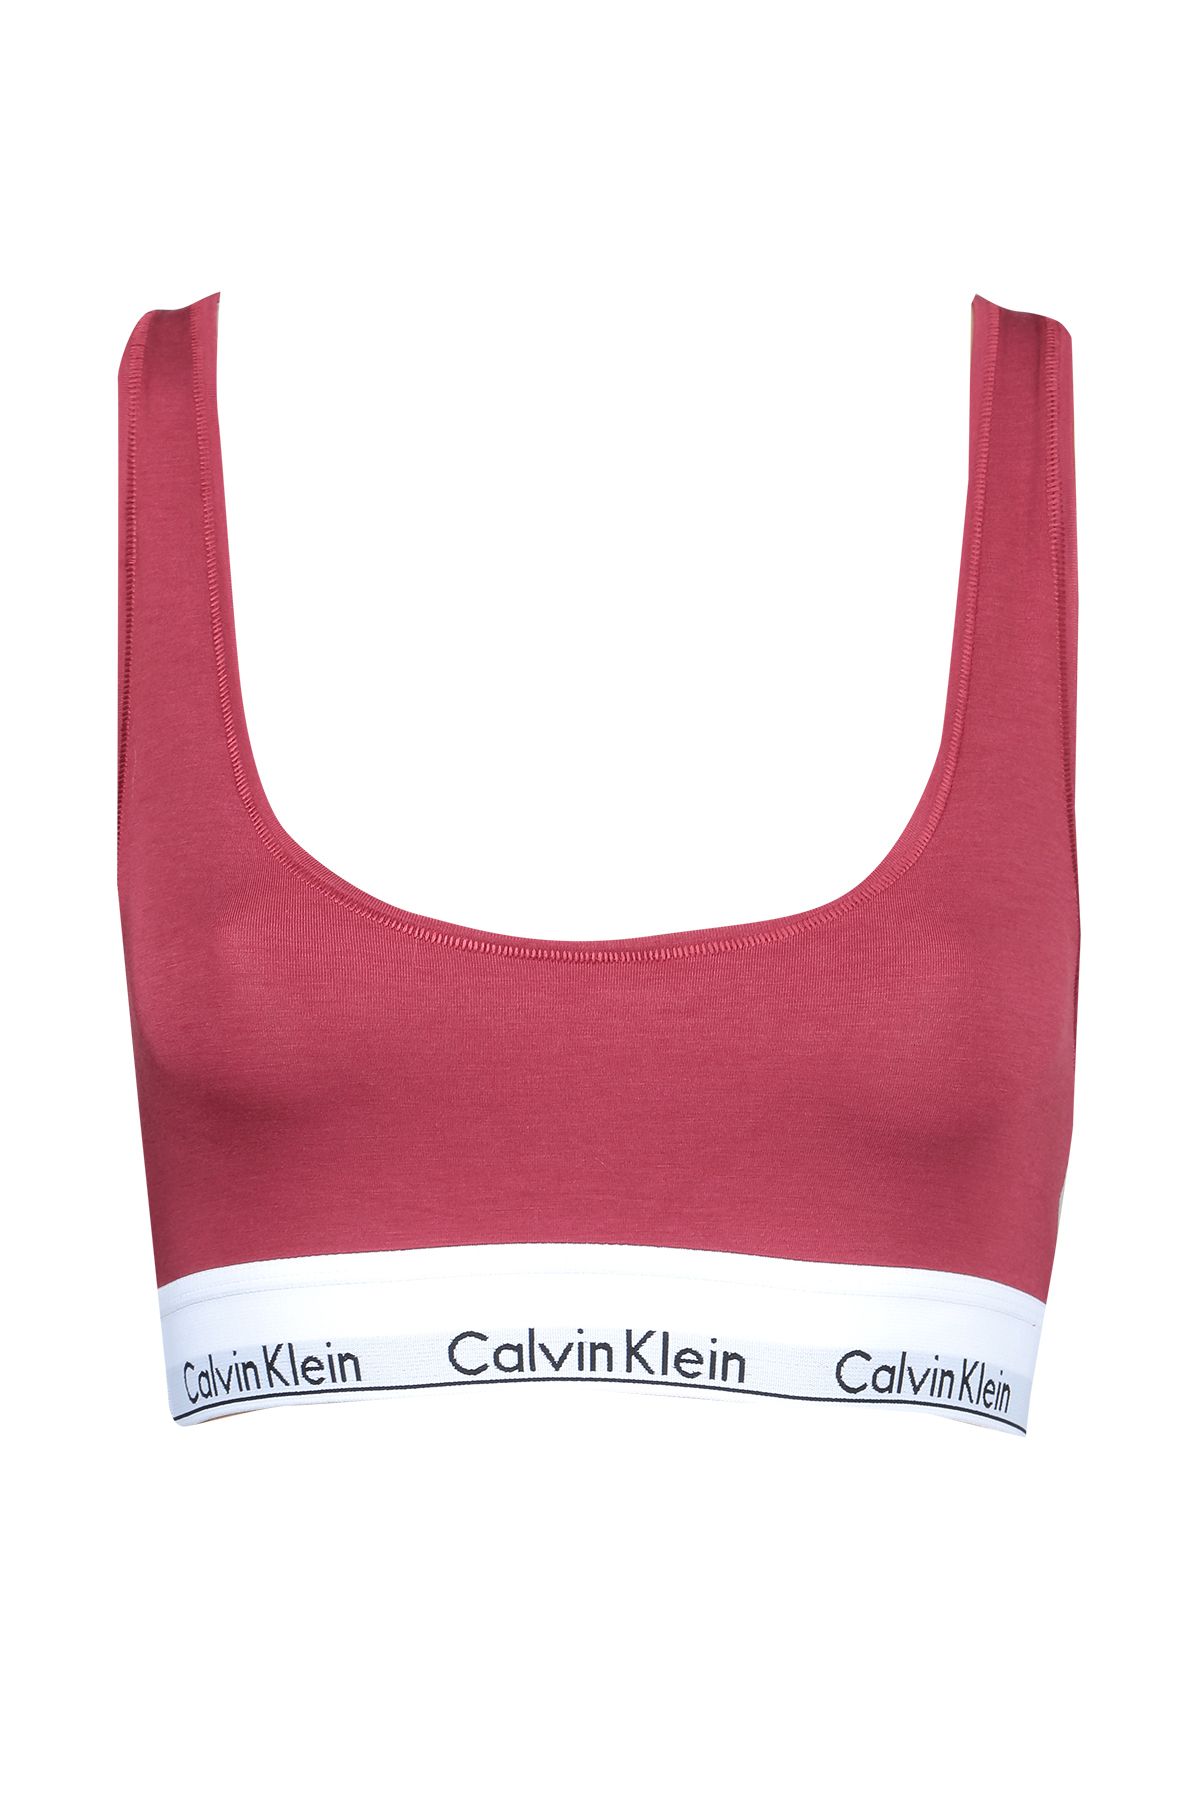 Calvin Klein Kadın Spor Atleti F3785-610